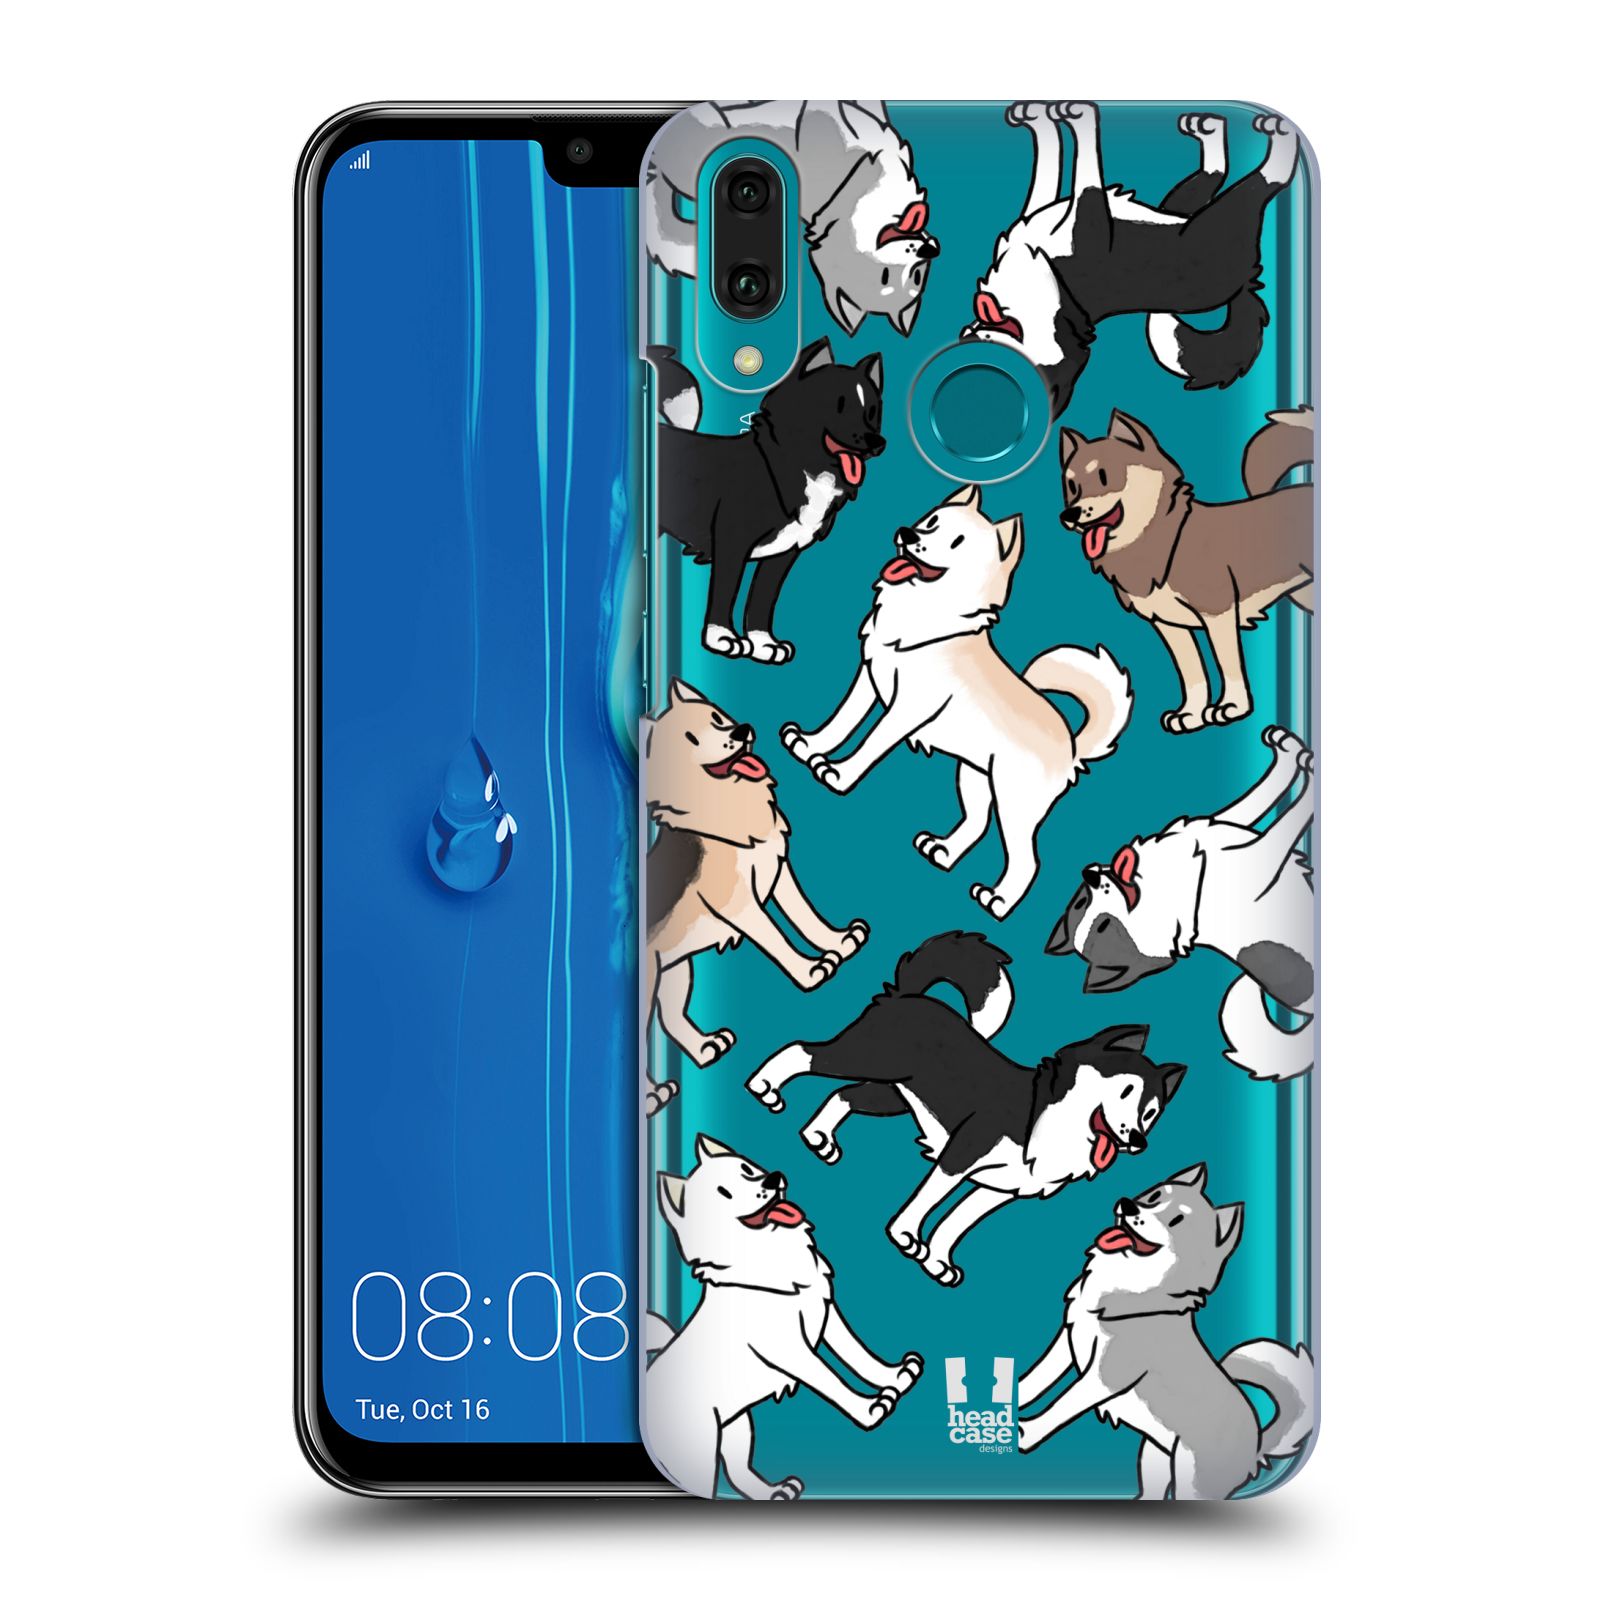 Pouzdro na mobil Huawei Y9 2019 - HEAD CASE - pejsek Sibiřský husky